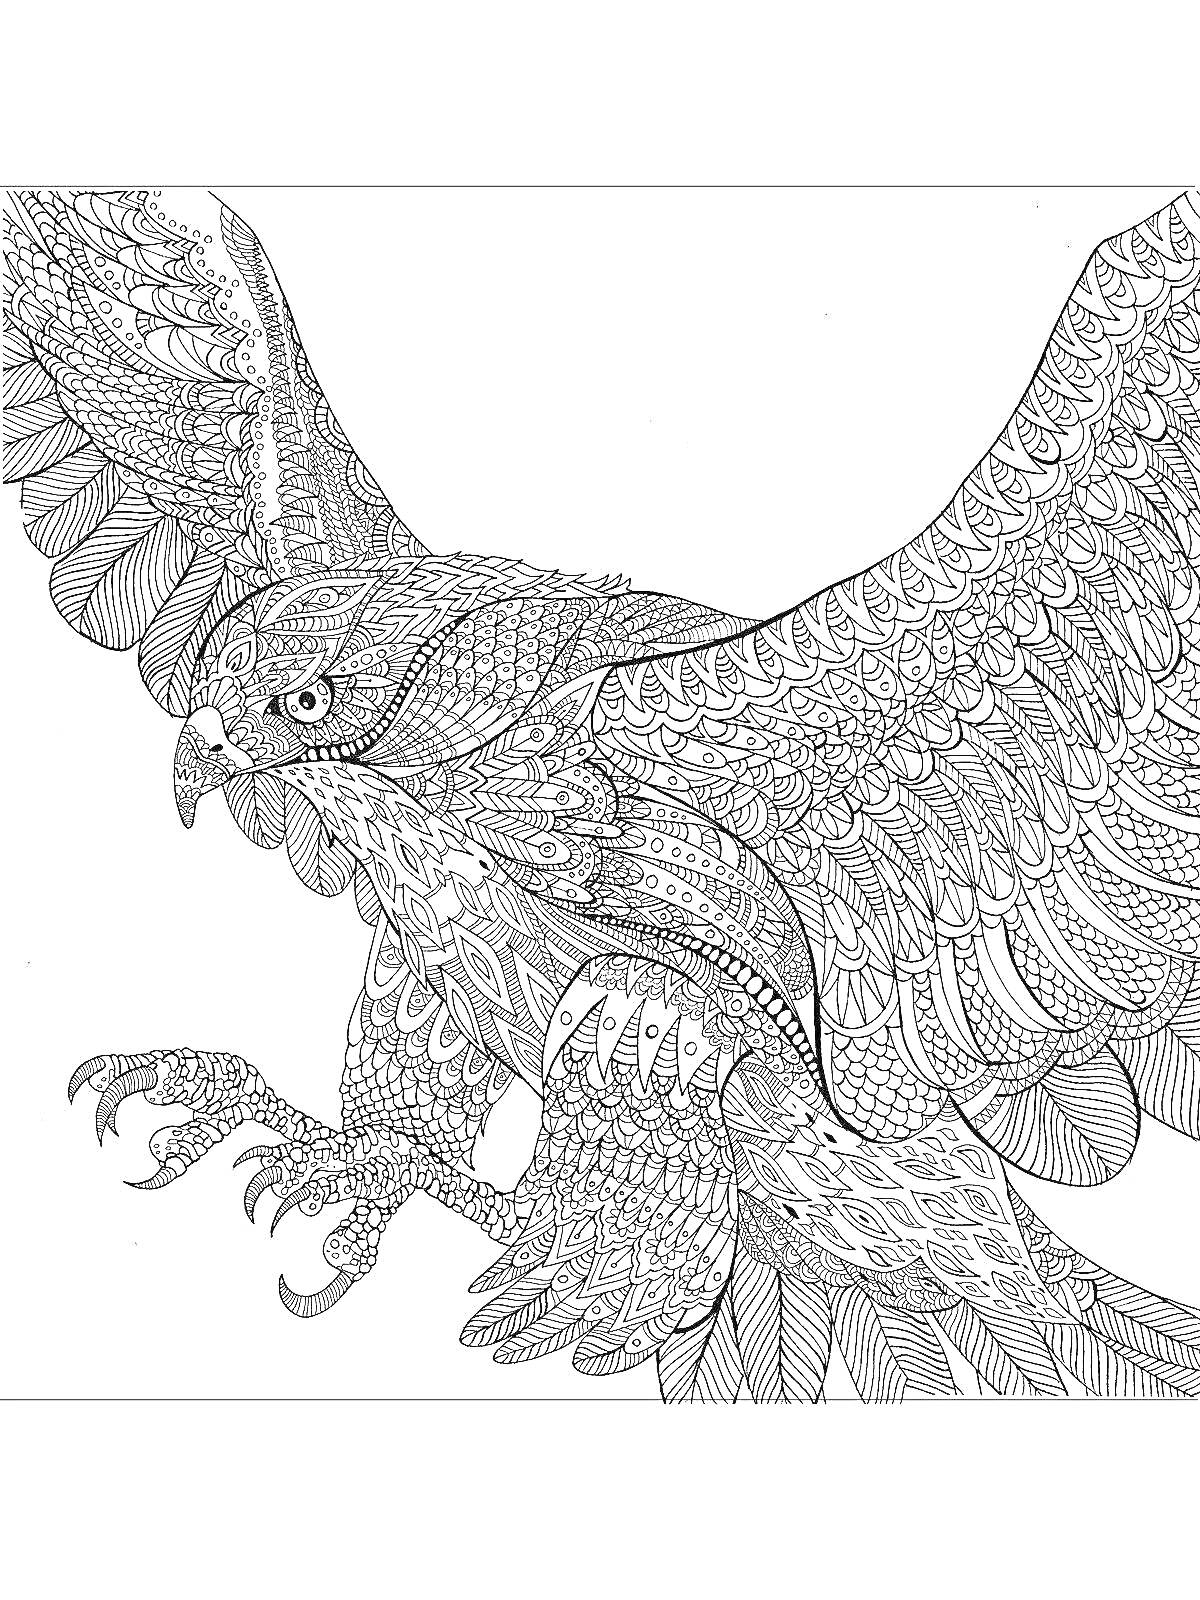 Раскраска Орел с расправленными крыльями, покрытый детализированными узорами